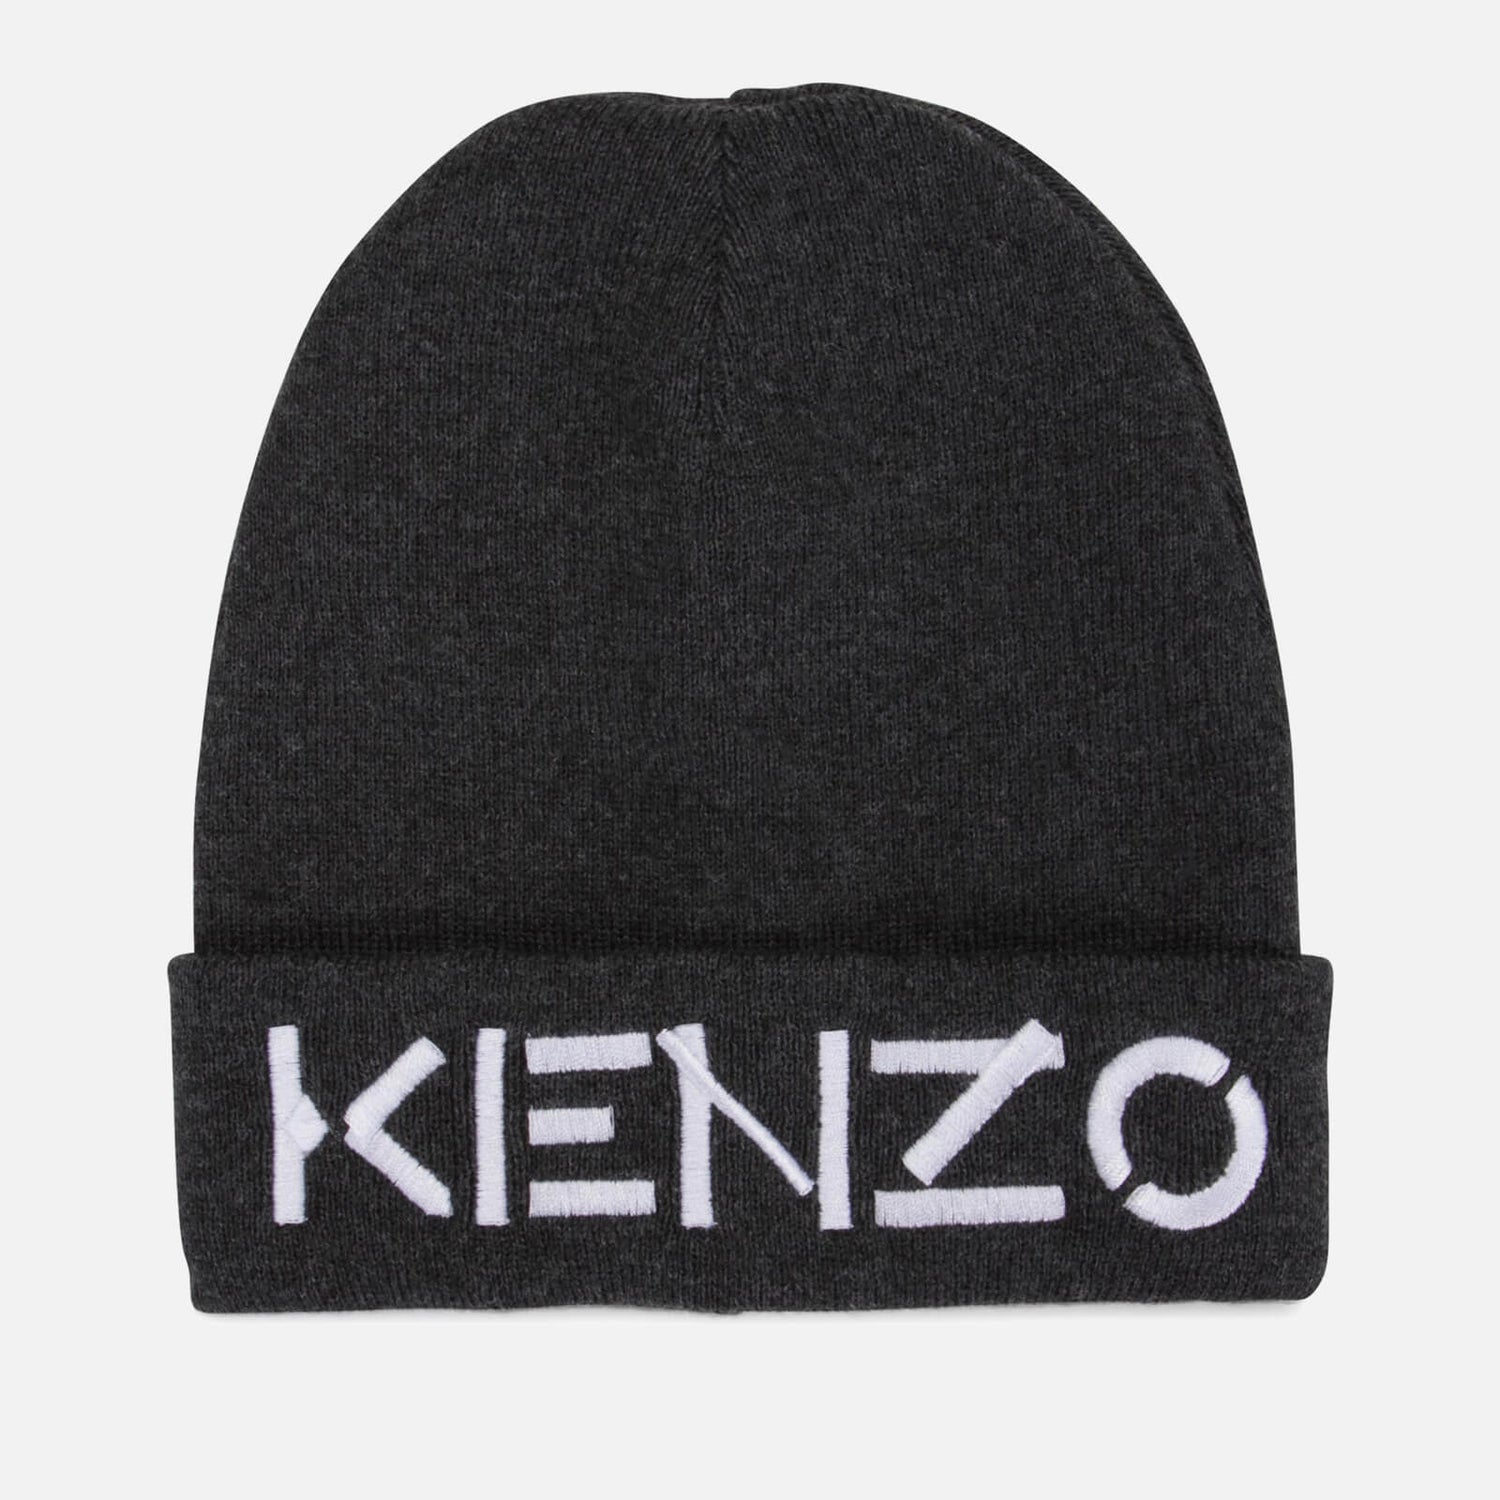 KENZO Boys Knit Beanie Hat - Small